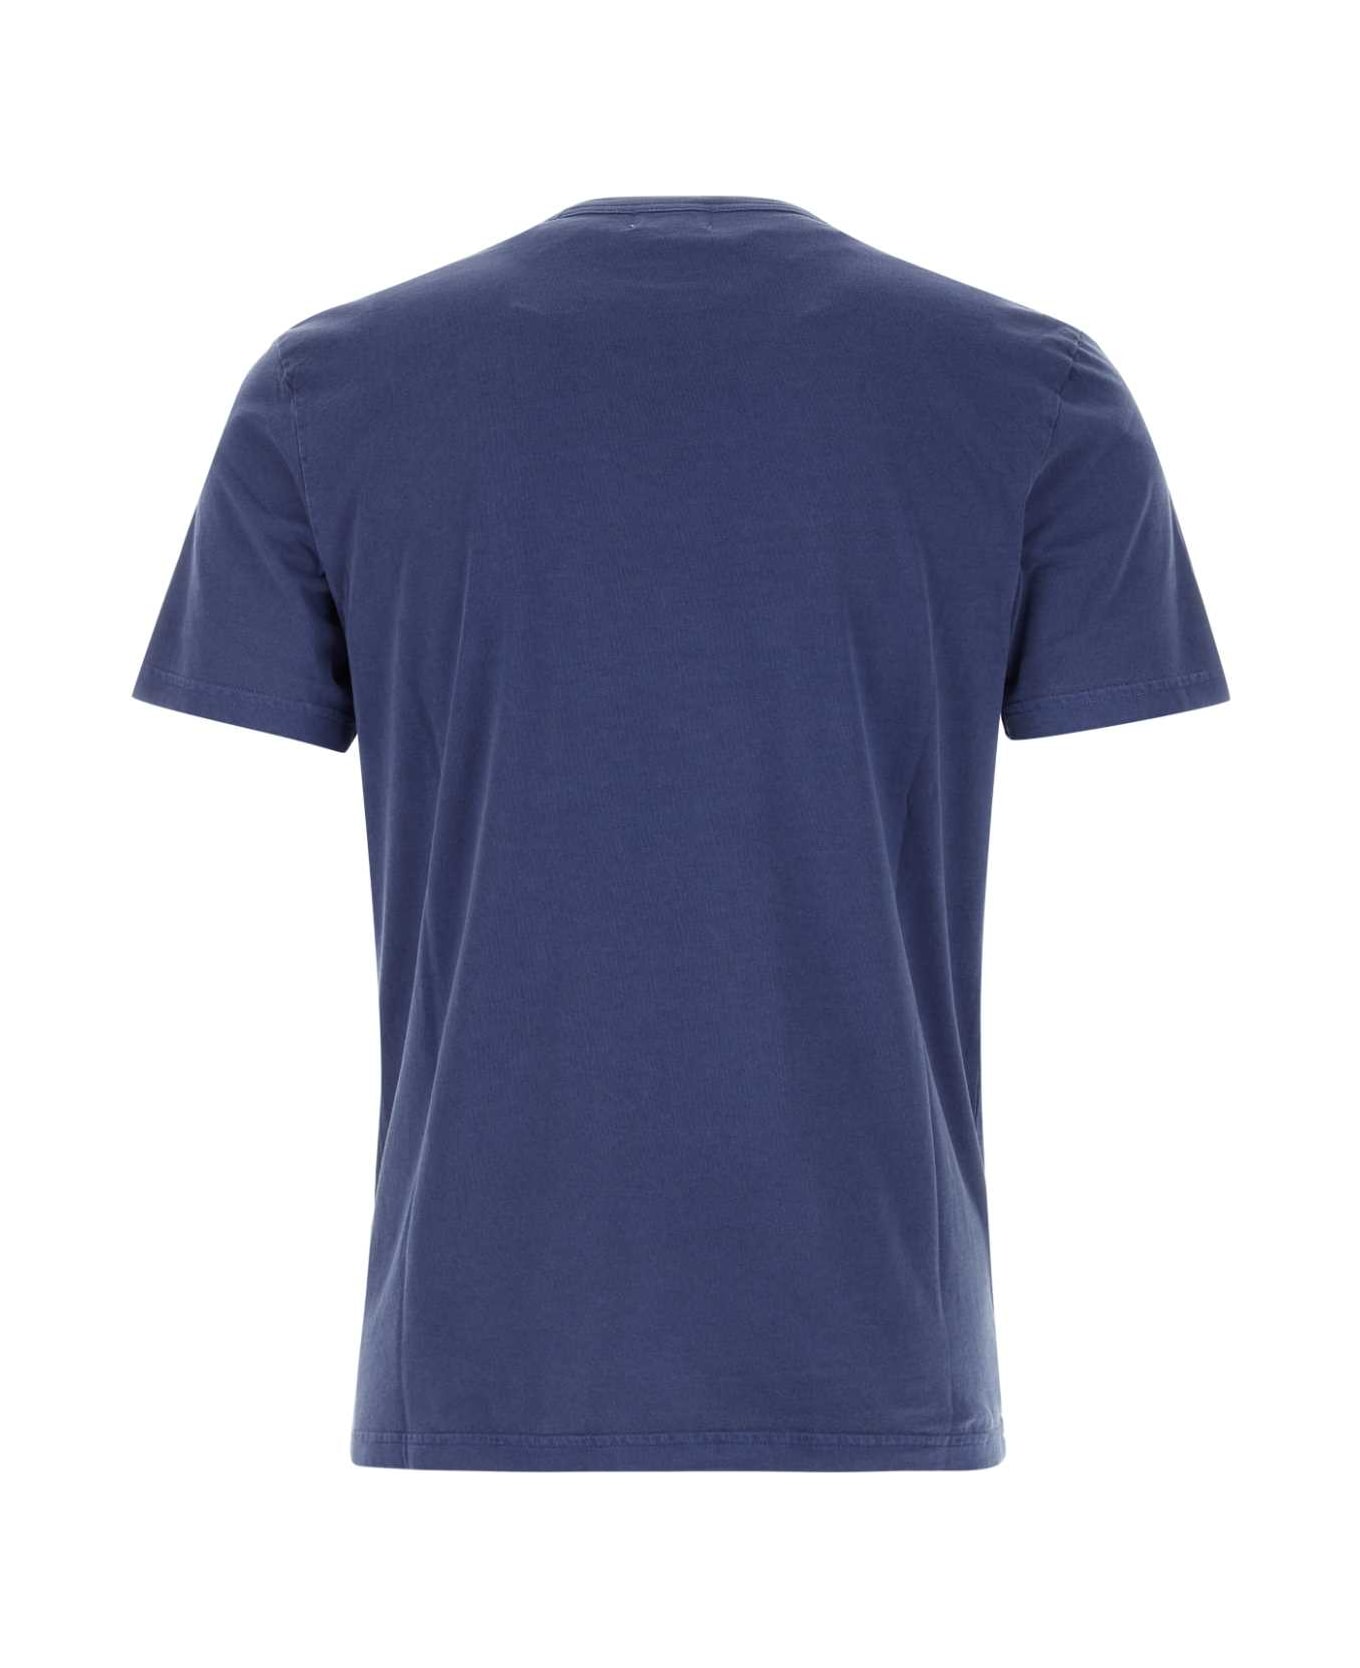 Woolrich Blue Cotton T-shirt - 31108 シャツ